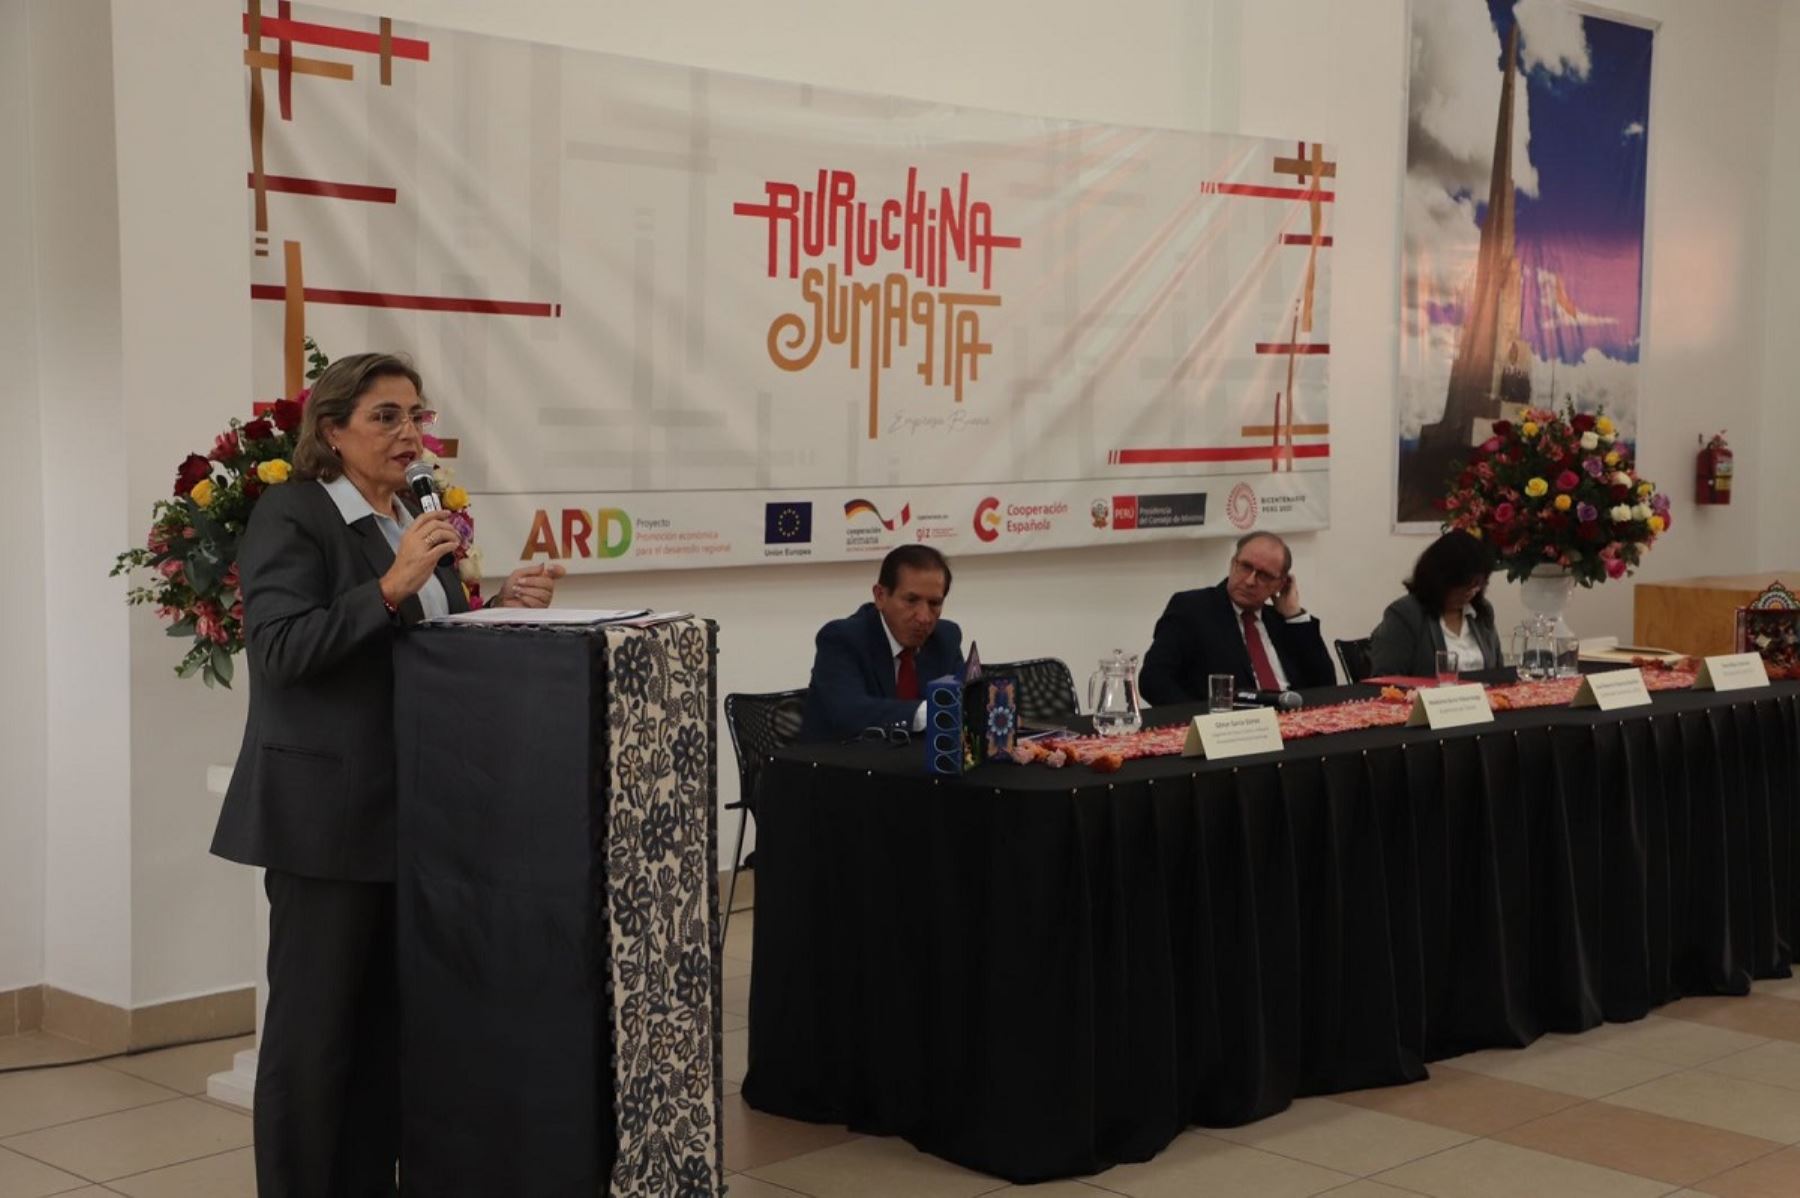 La viceministra de Turismo, Madeleine Burns, presentó hoy el proyecto Ruruchina Sumaqta (Empresa Buena), en Ayacucho, para impulsar la innovación en la artesanía. Foto: Cortesía.